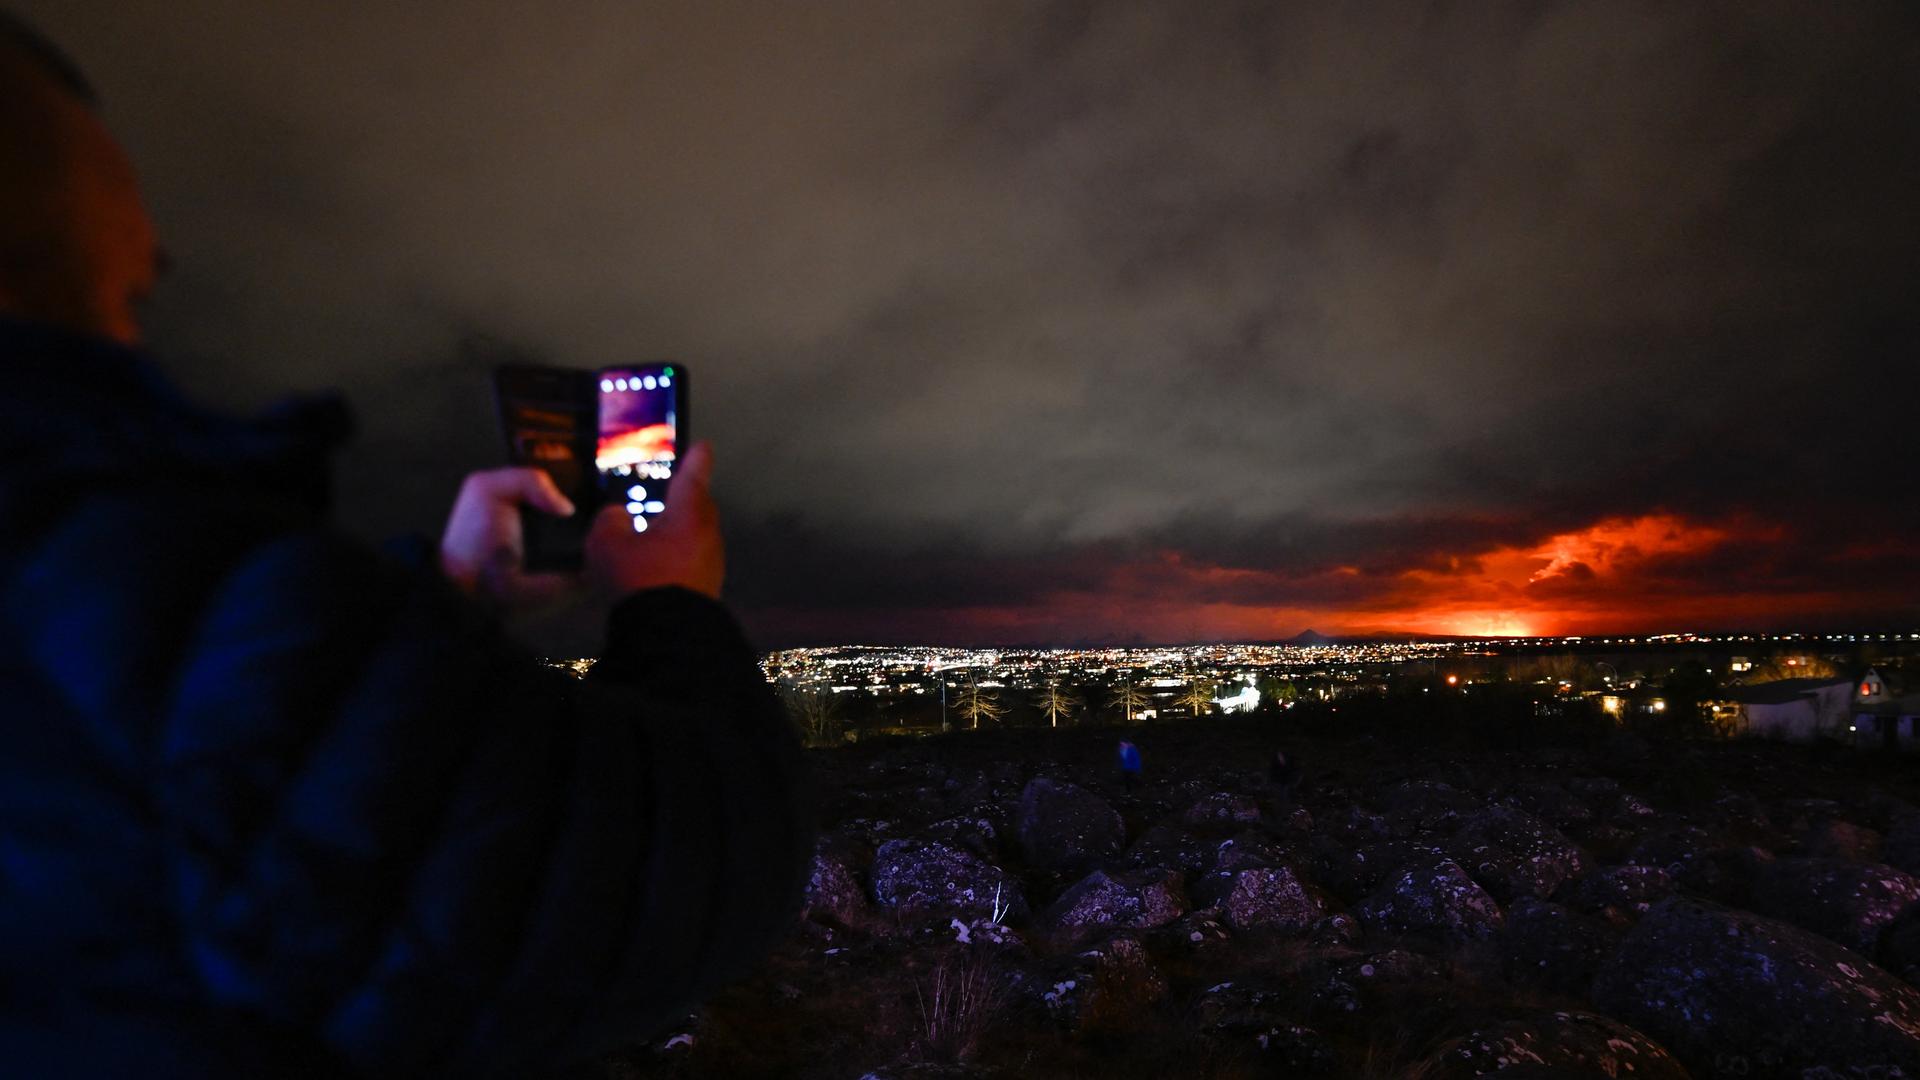 In einem Vorort von Reykjavik machen Menschen mit dem Handy Fotos von dem Vulkanausbruch, der am Horizont zu sehen ist.